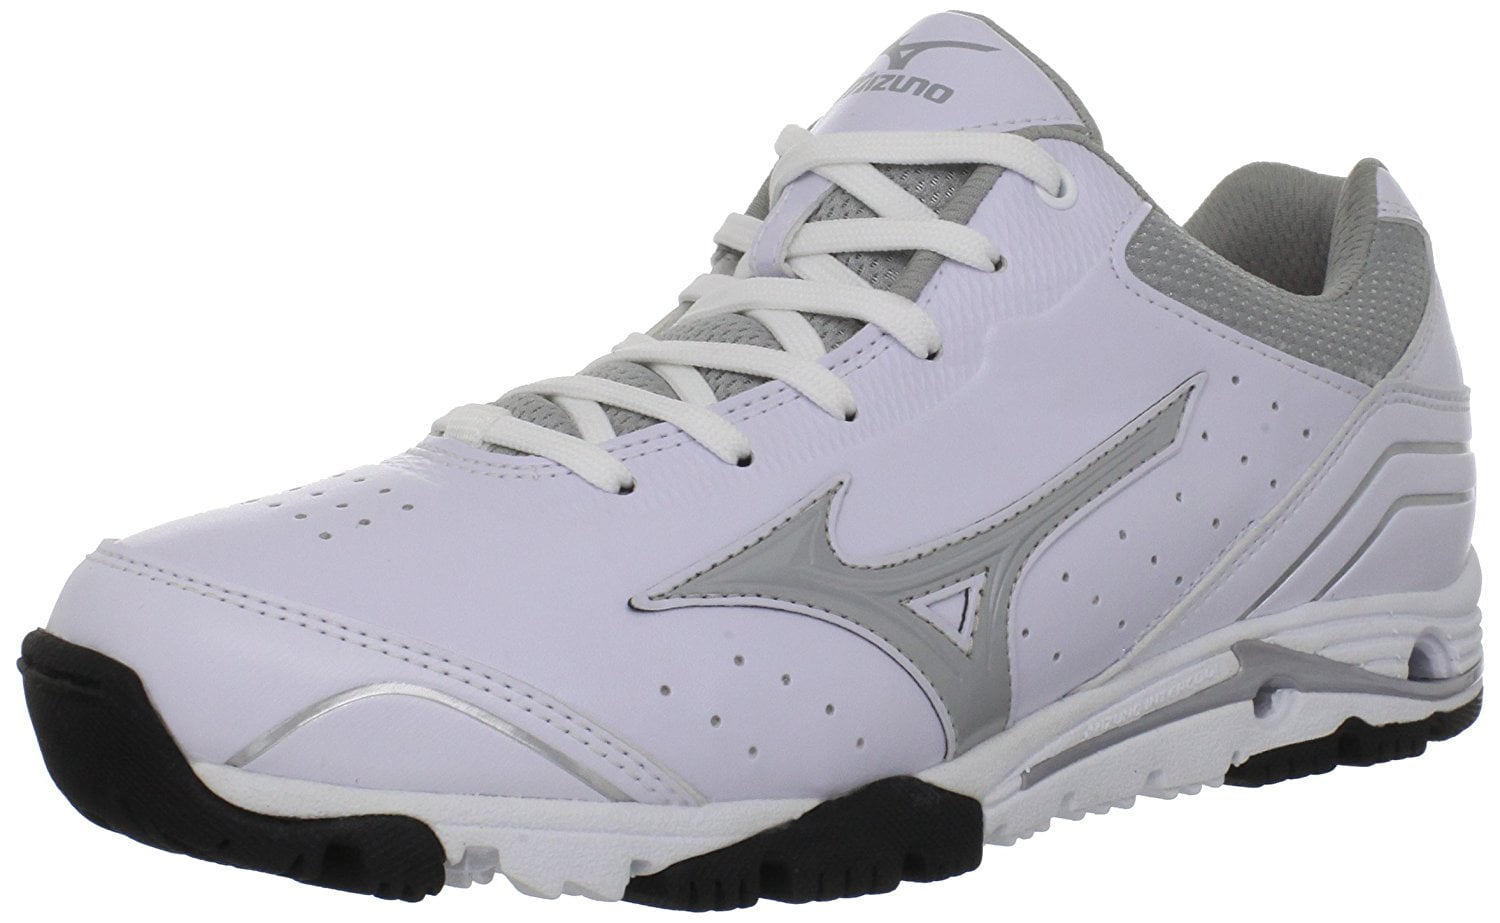 New Mizuno Speed Trainer 4 320426 Mens 10.5 Baseball Shoes White/Gray ...